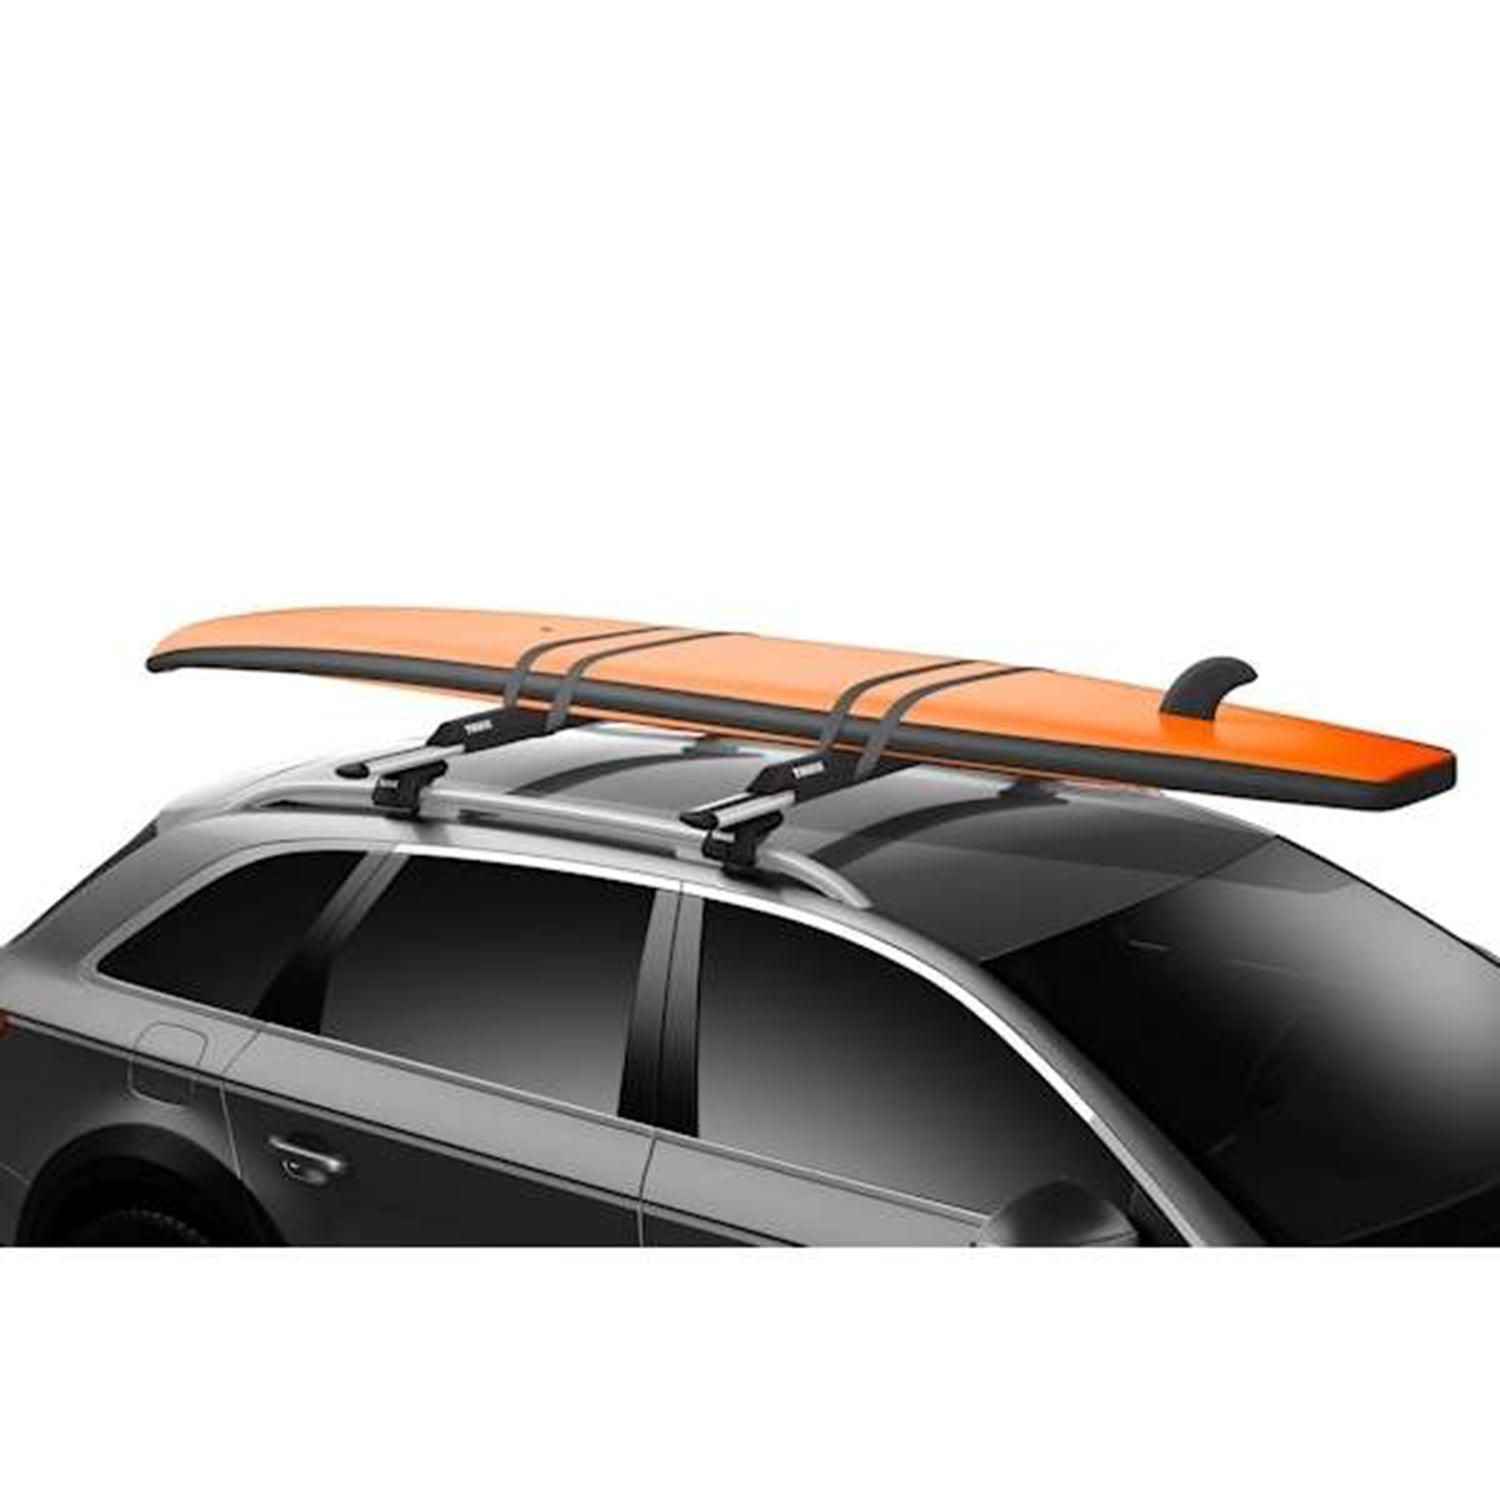 Produktbild von zubehör " Surf Pads 846 Wide 76 cm " der Marke Thule für 50.00 €. Erhältlich online bei Lite Venture ( www.liteventure.de )